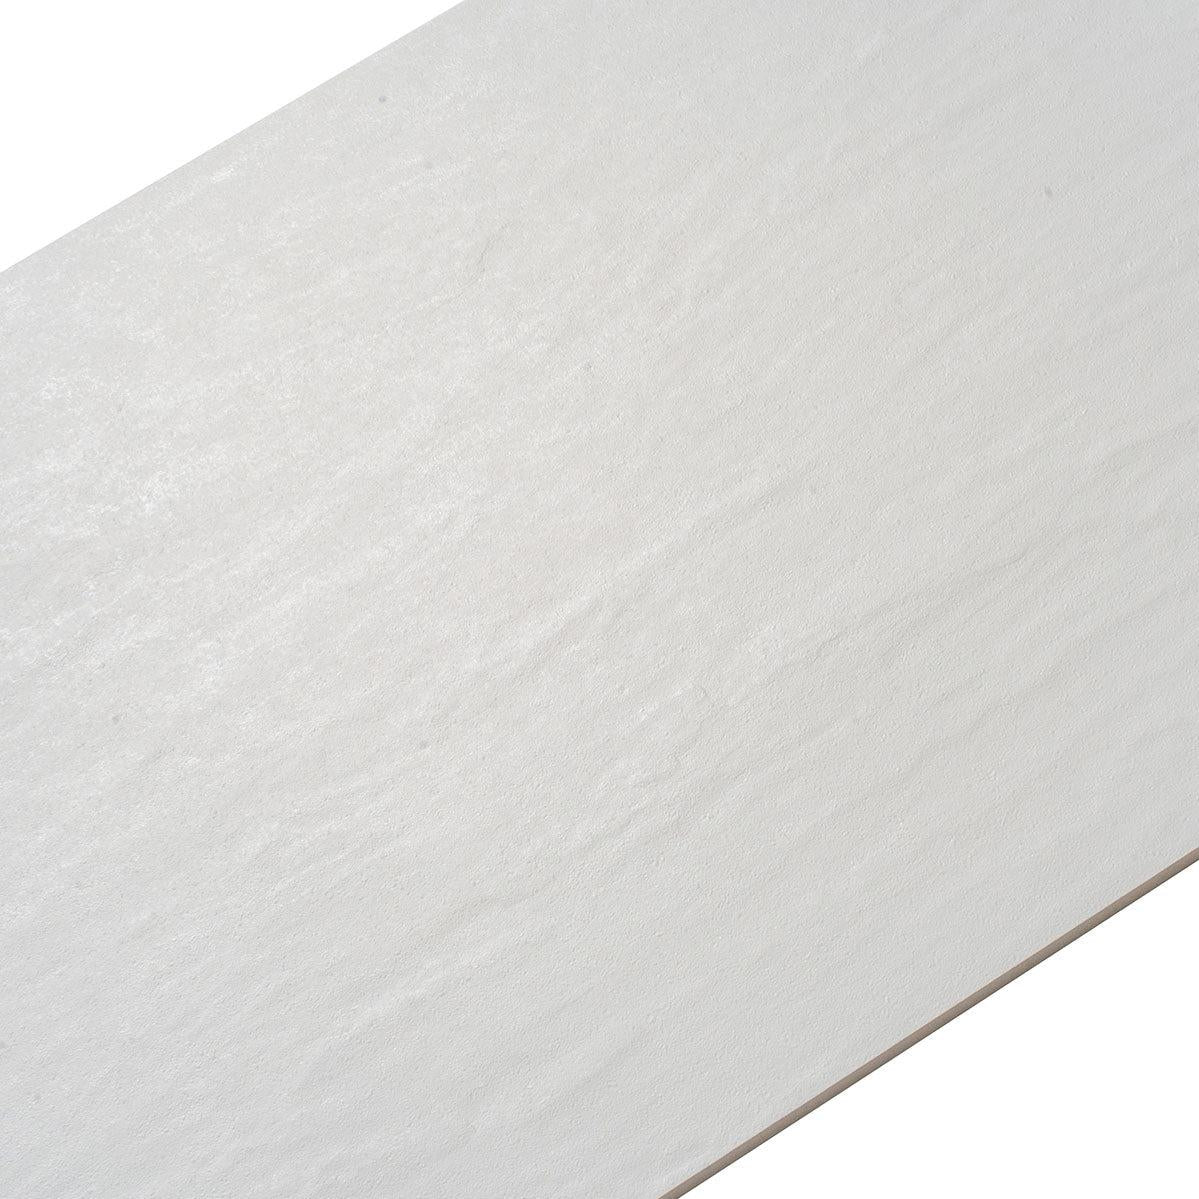 Grazioso Slate White Ceramic Tile